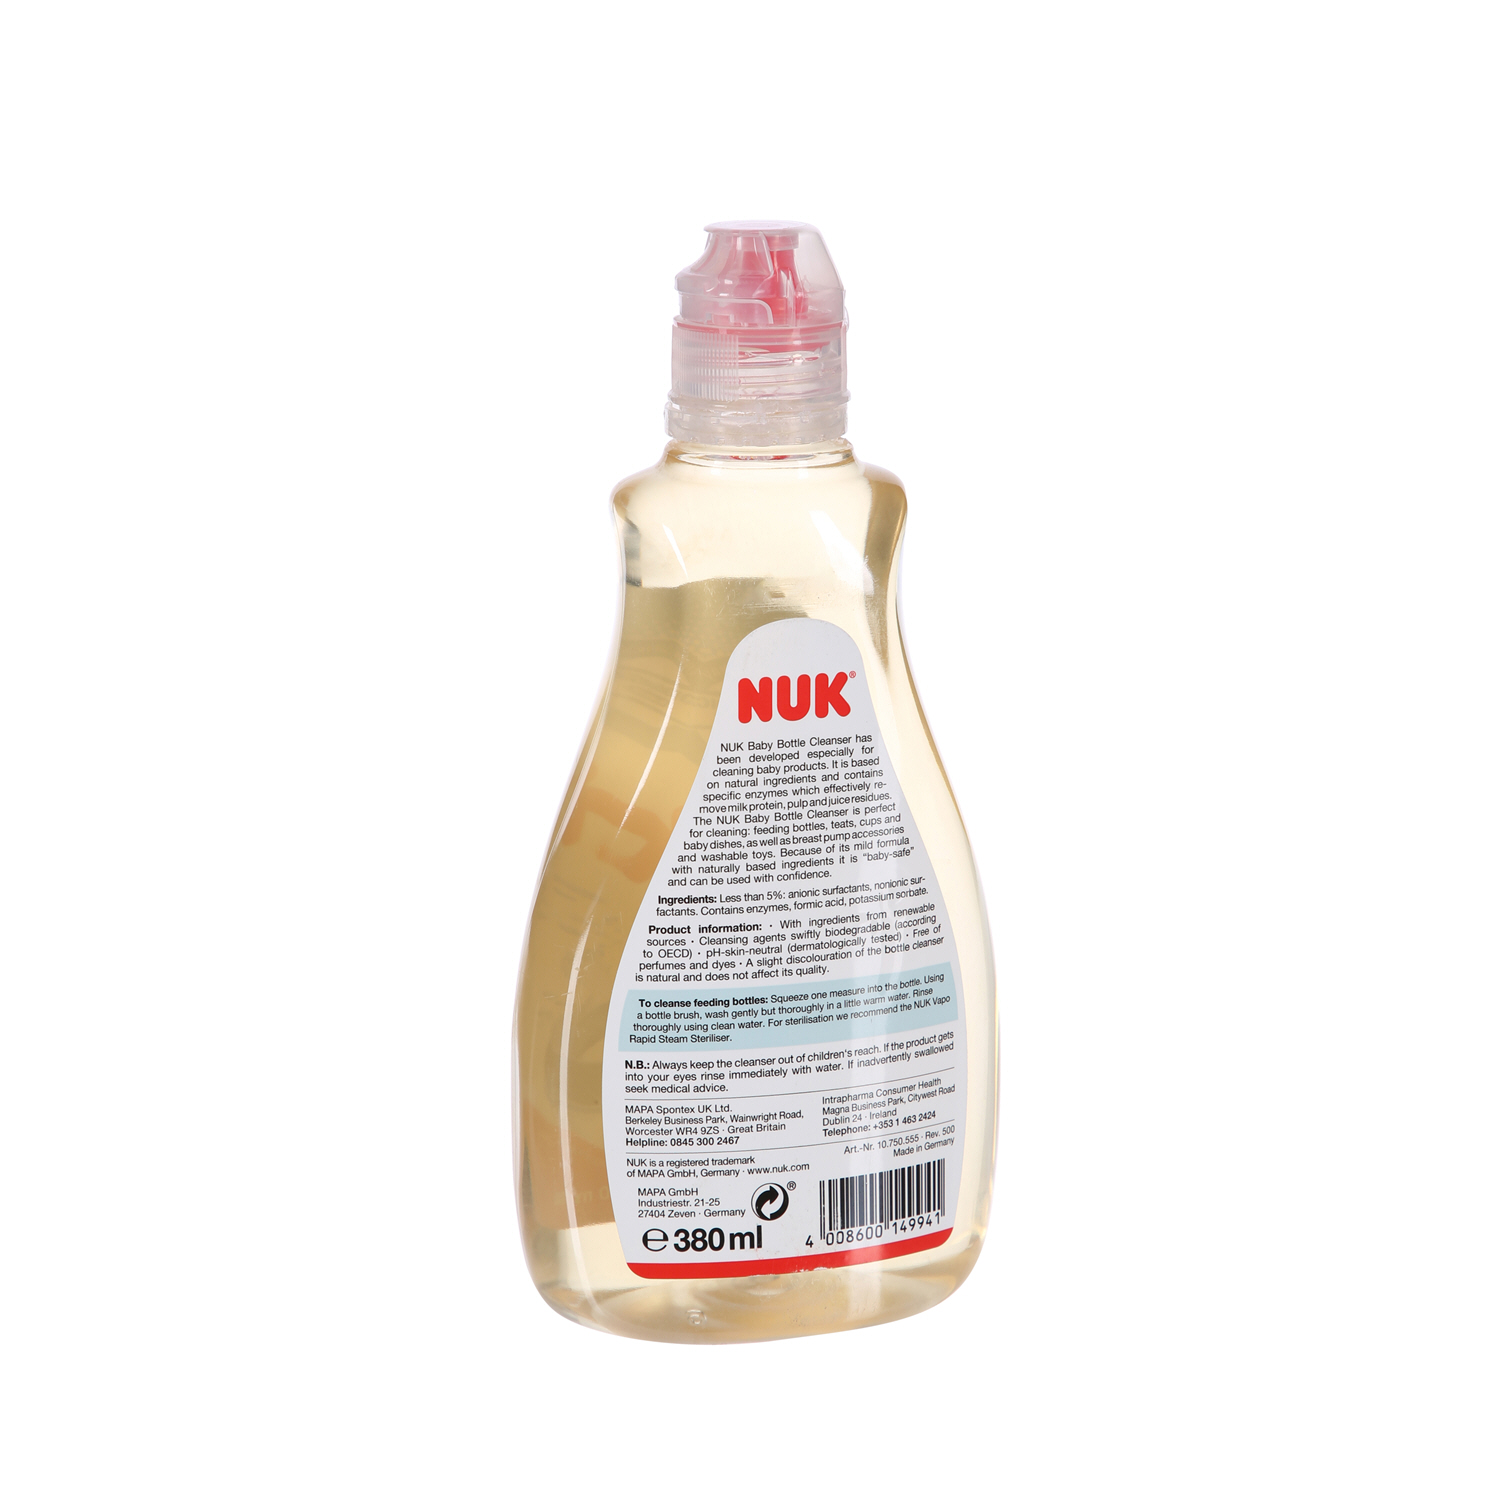 Nuk Bottle Cleanser 380ml